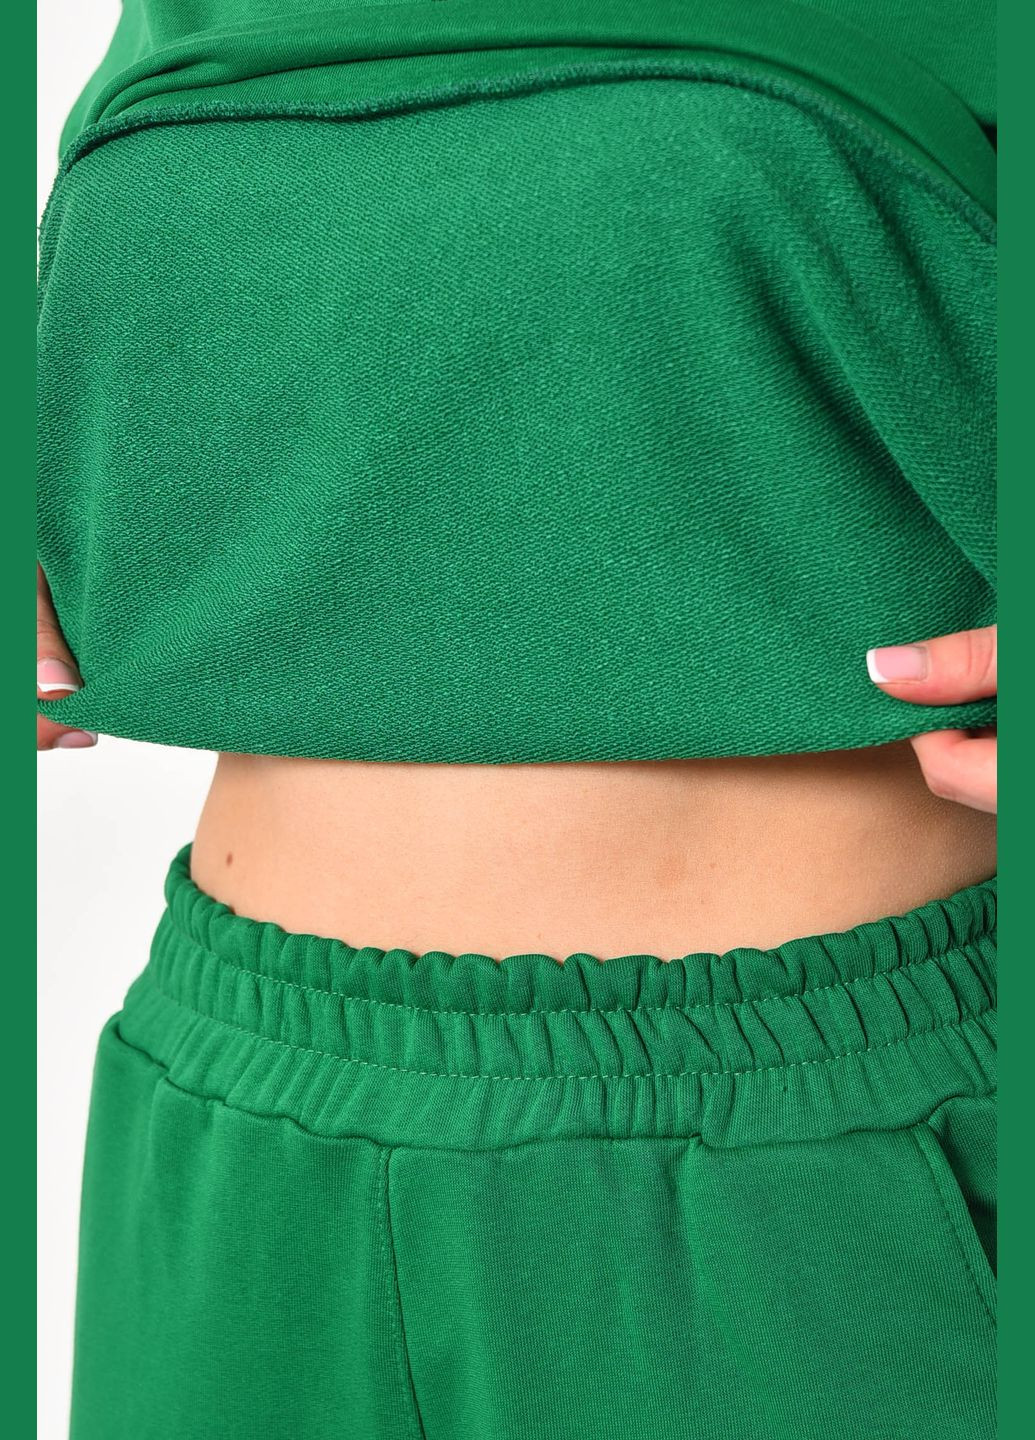 Спортивный костюм женский зеленого цвета Let's Shop (285692255)